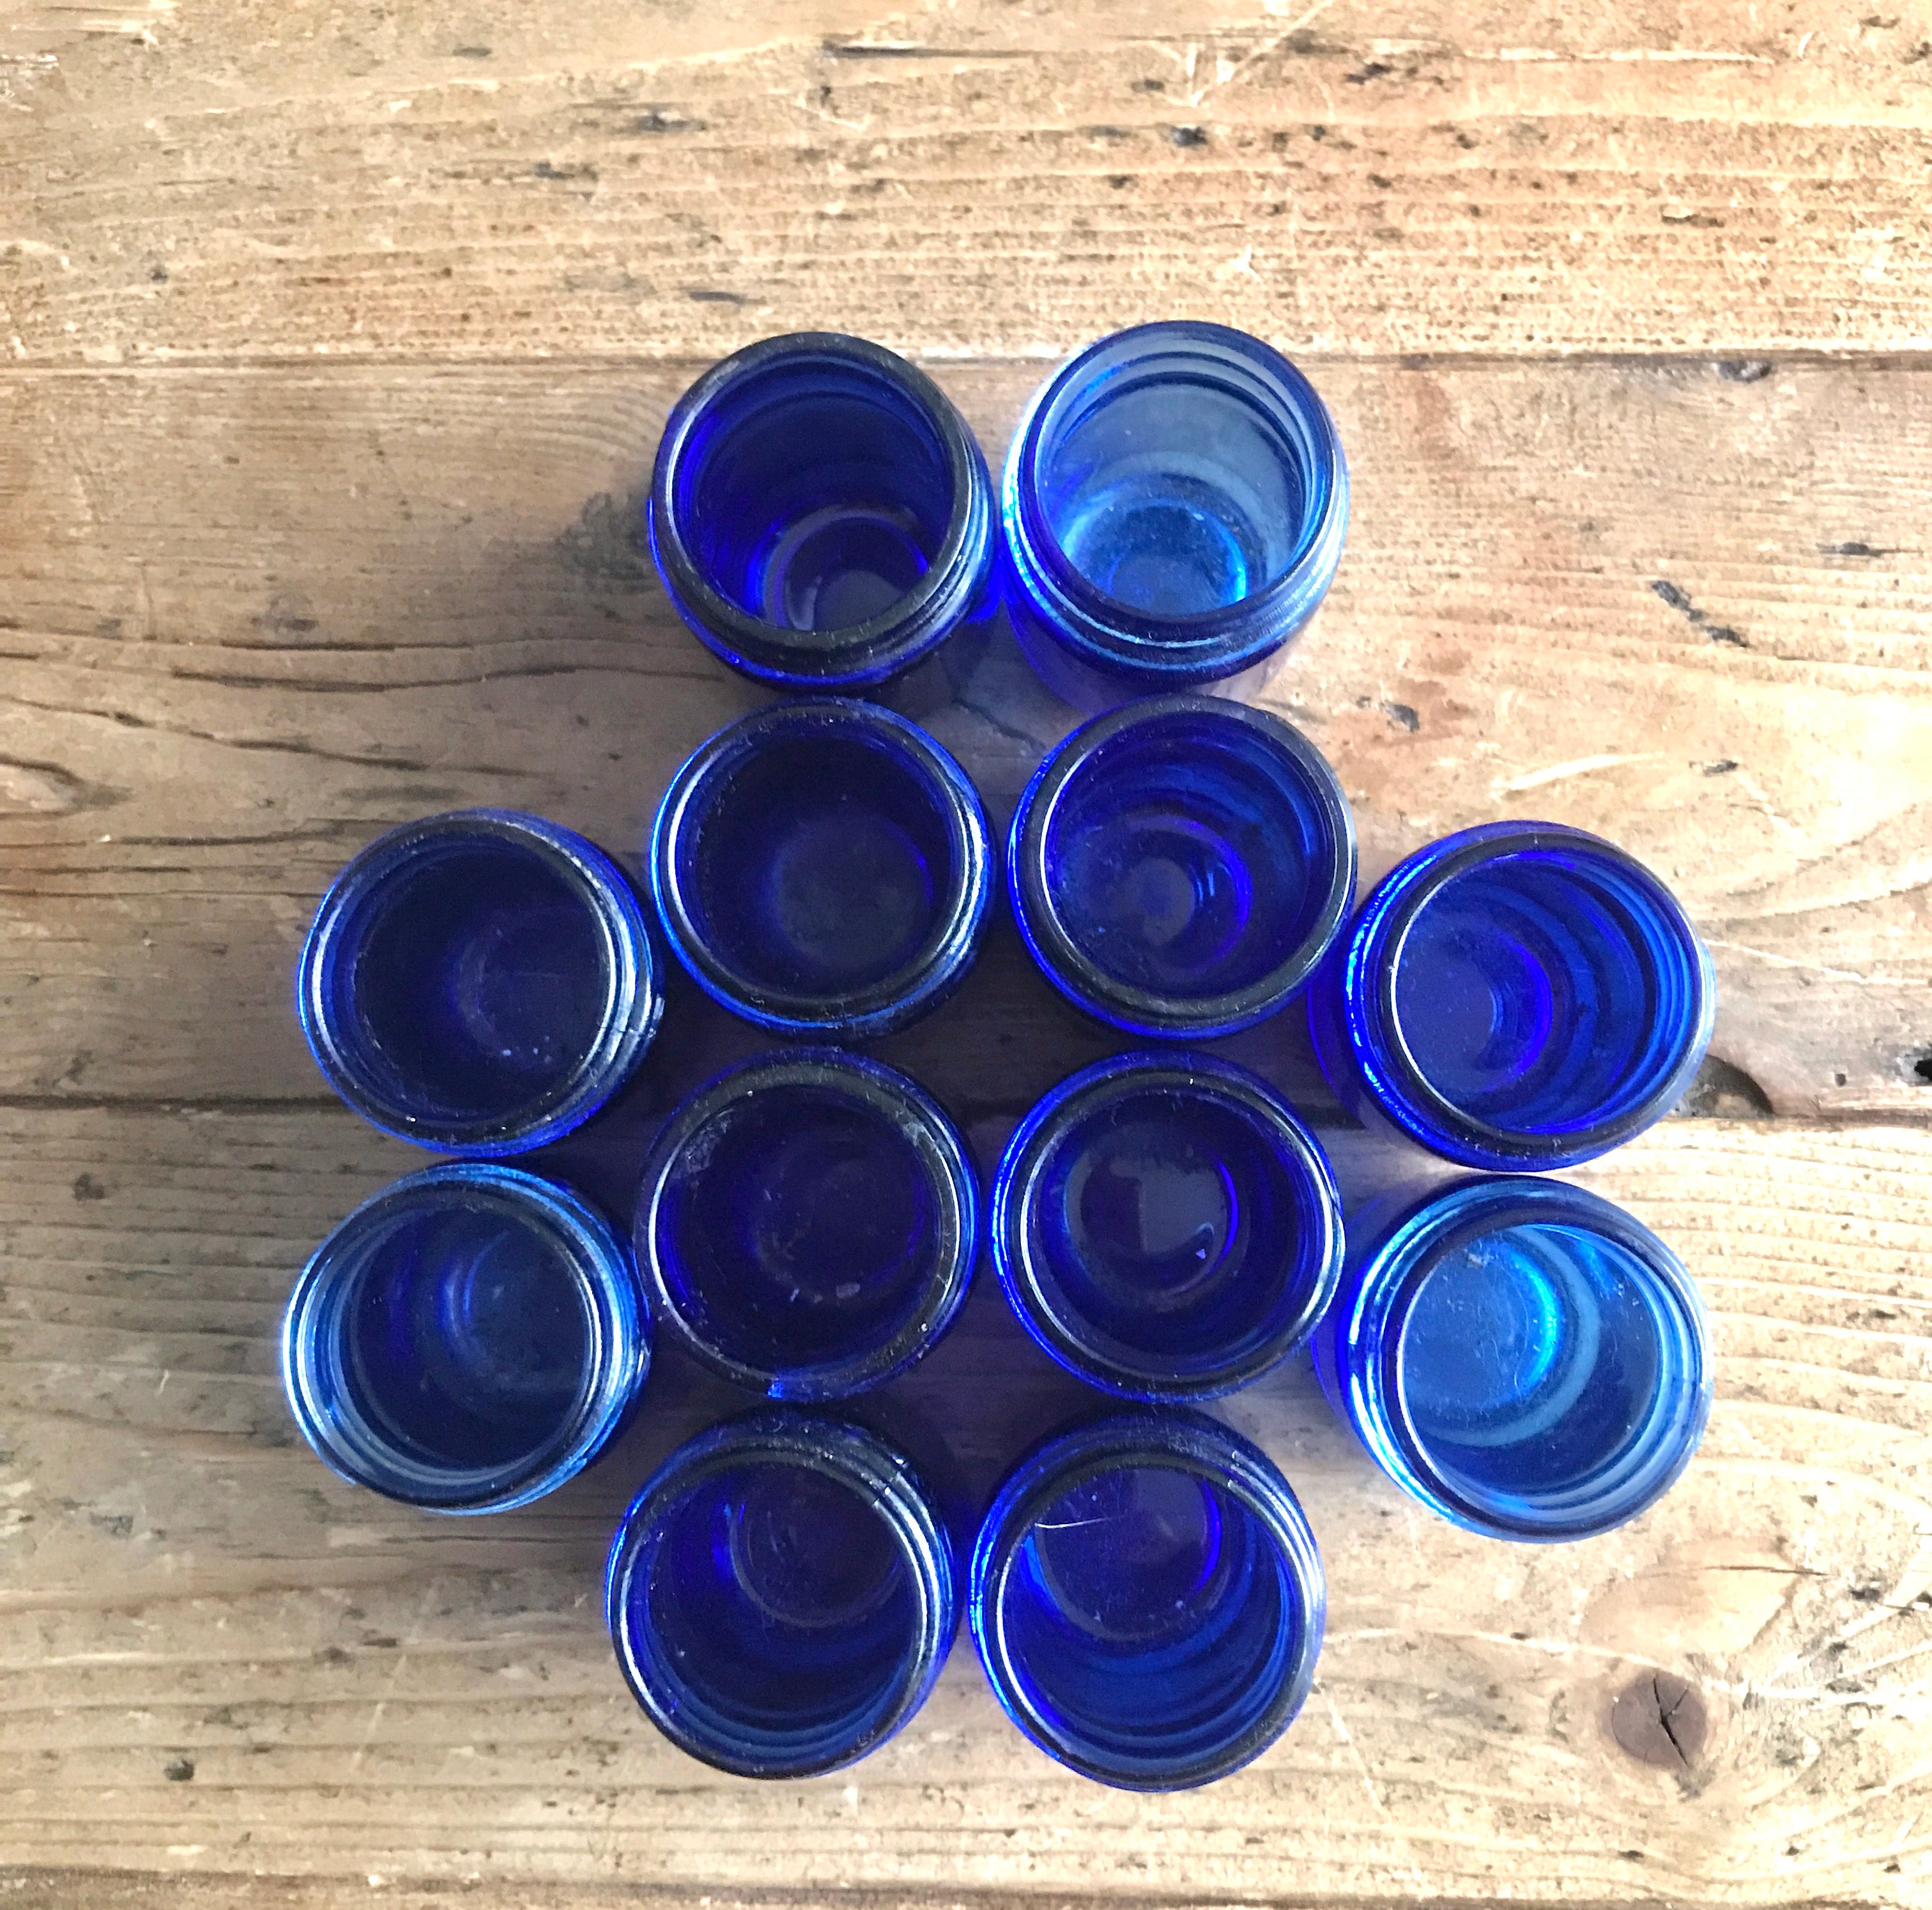 Collection of 12 Vintage Cobalt Blue Glass Vicks Jars